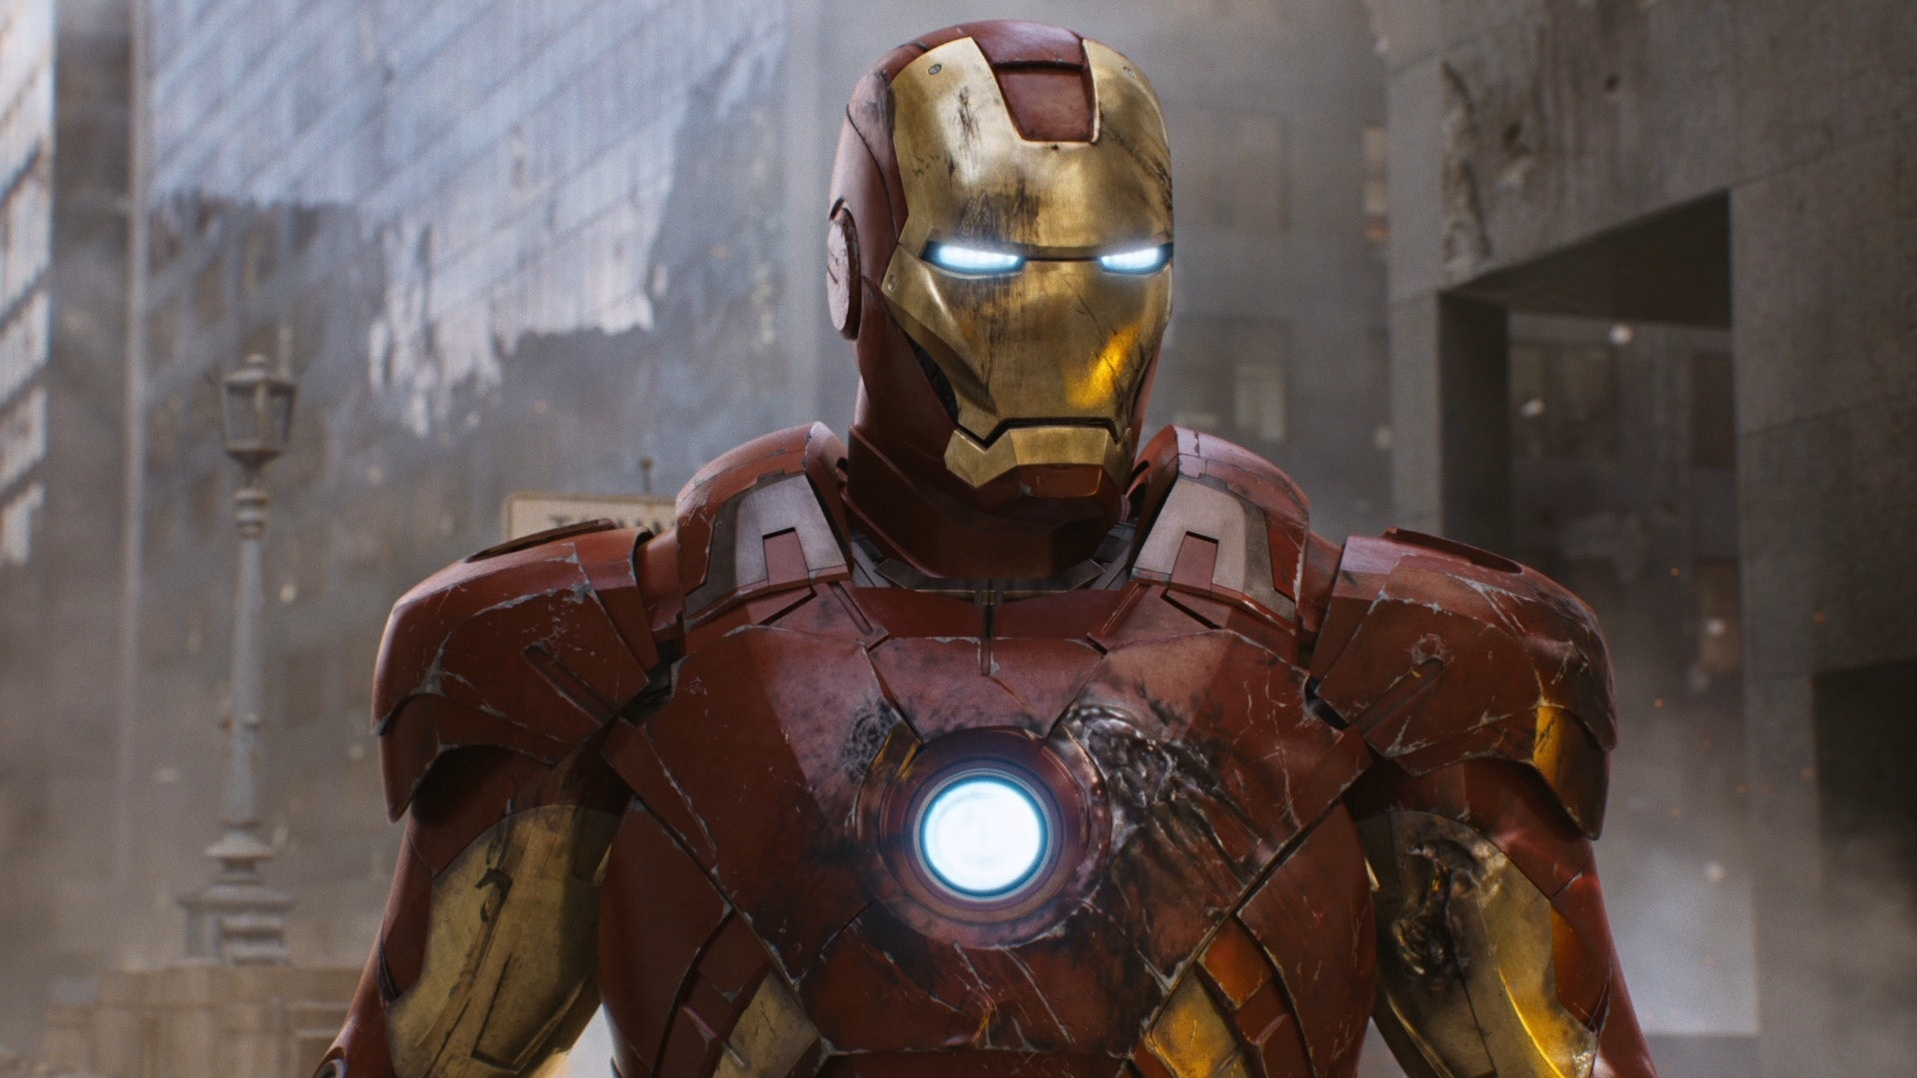 Iron-Man : Arrêté pour escroquerie, un acteur prétendait pouvoir soigner le coronavirus